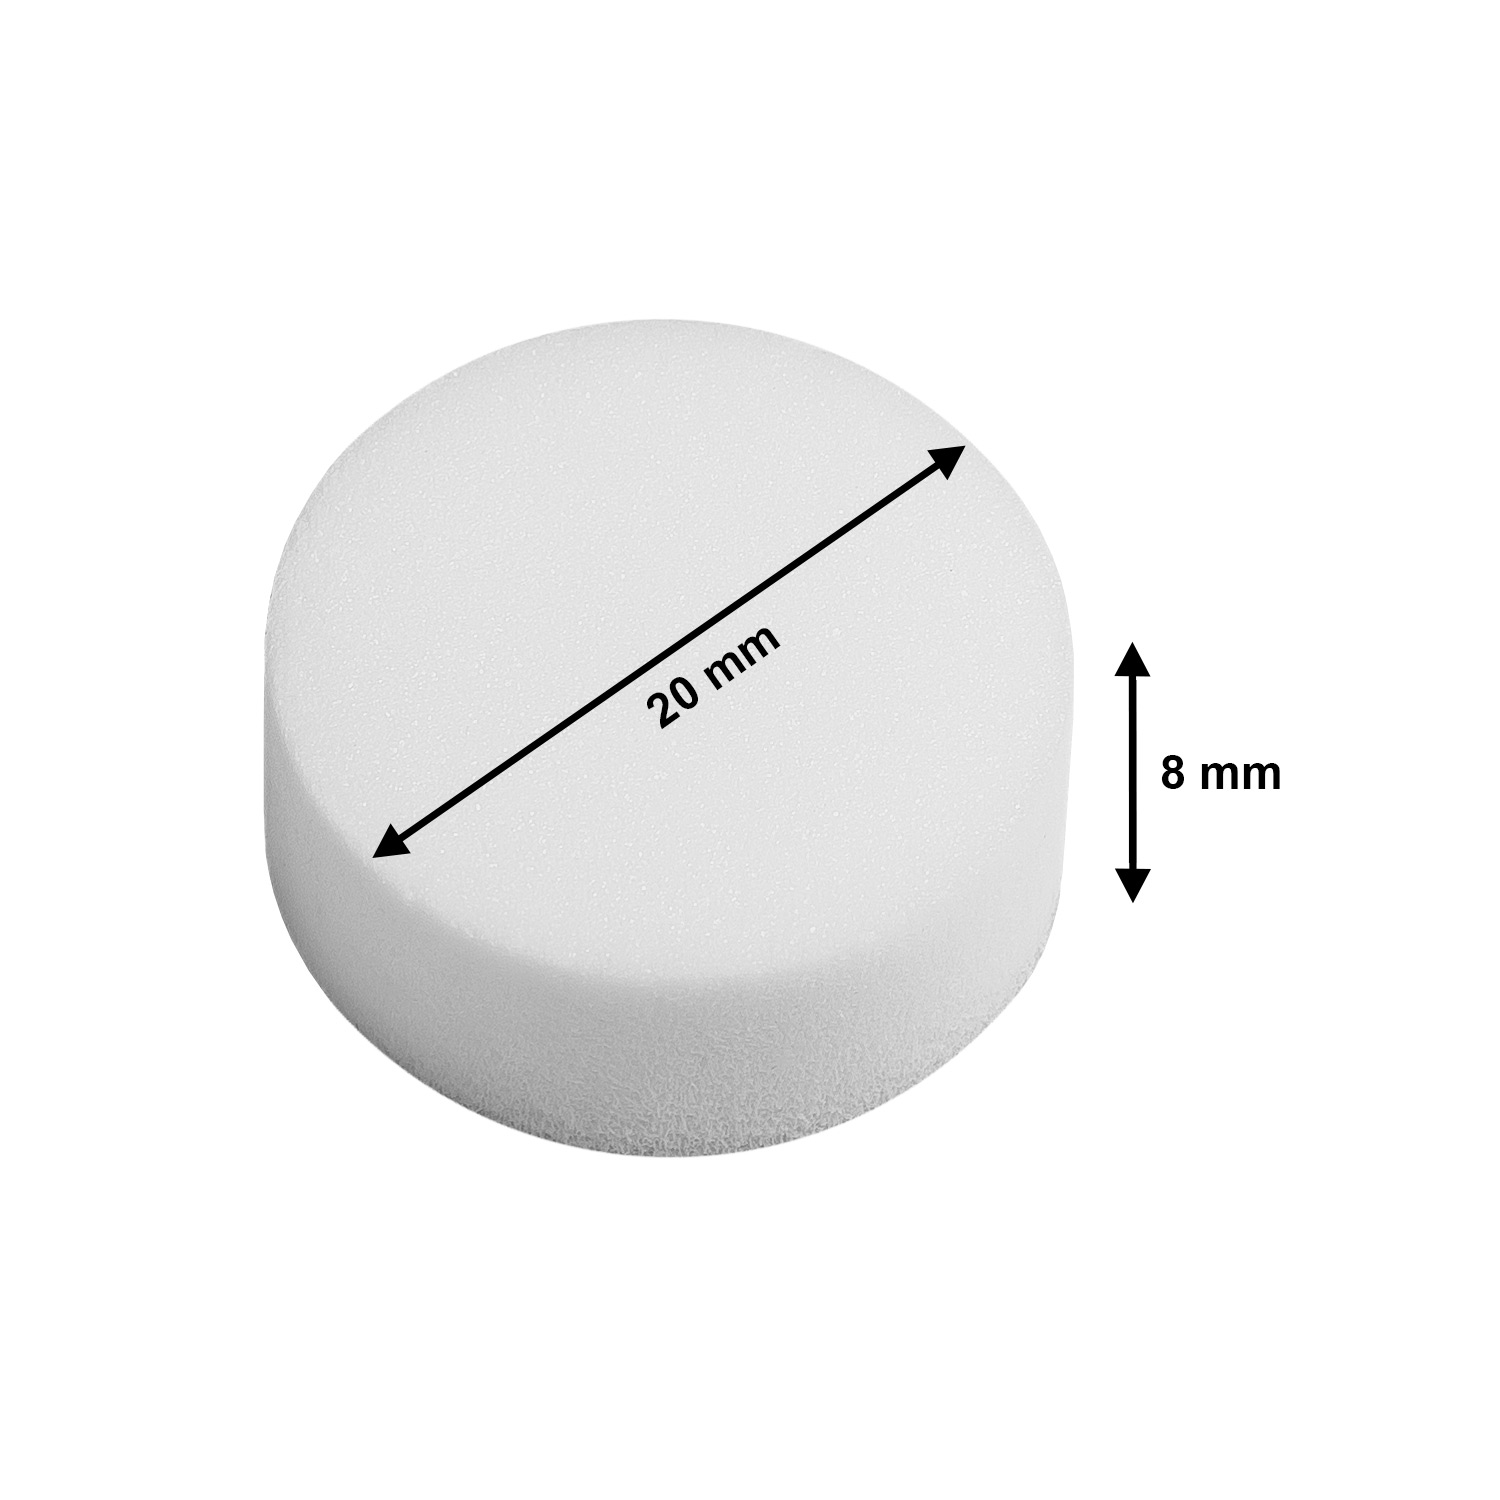 10 Abstandspuffer - Ø 20 mm Höhe 8mm Abstandshalter in Weiß aus Schaumstoff  - selbstklebend von Hang-it